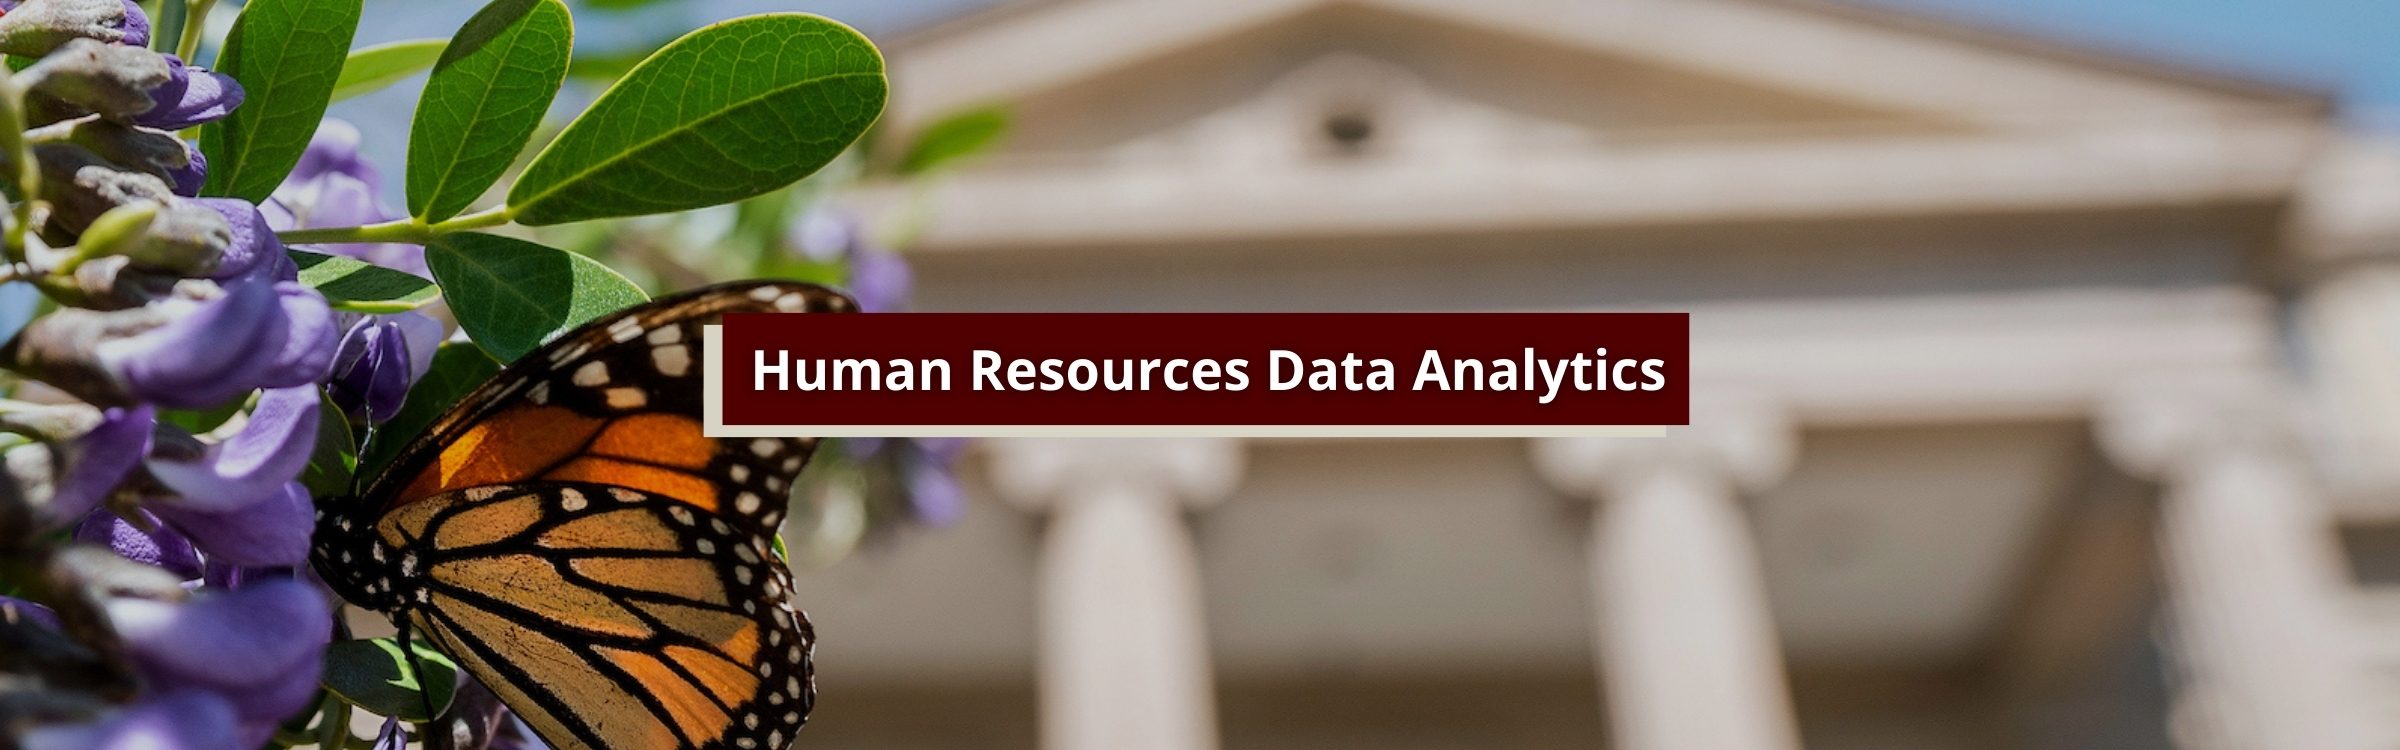 HR Data Analytics